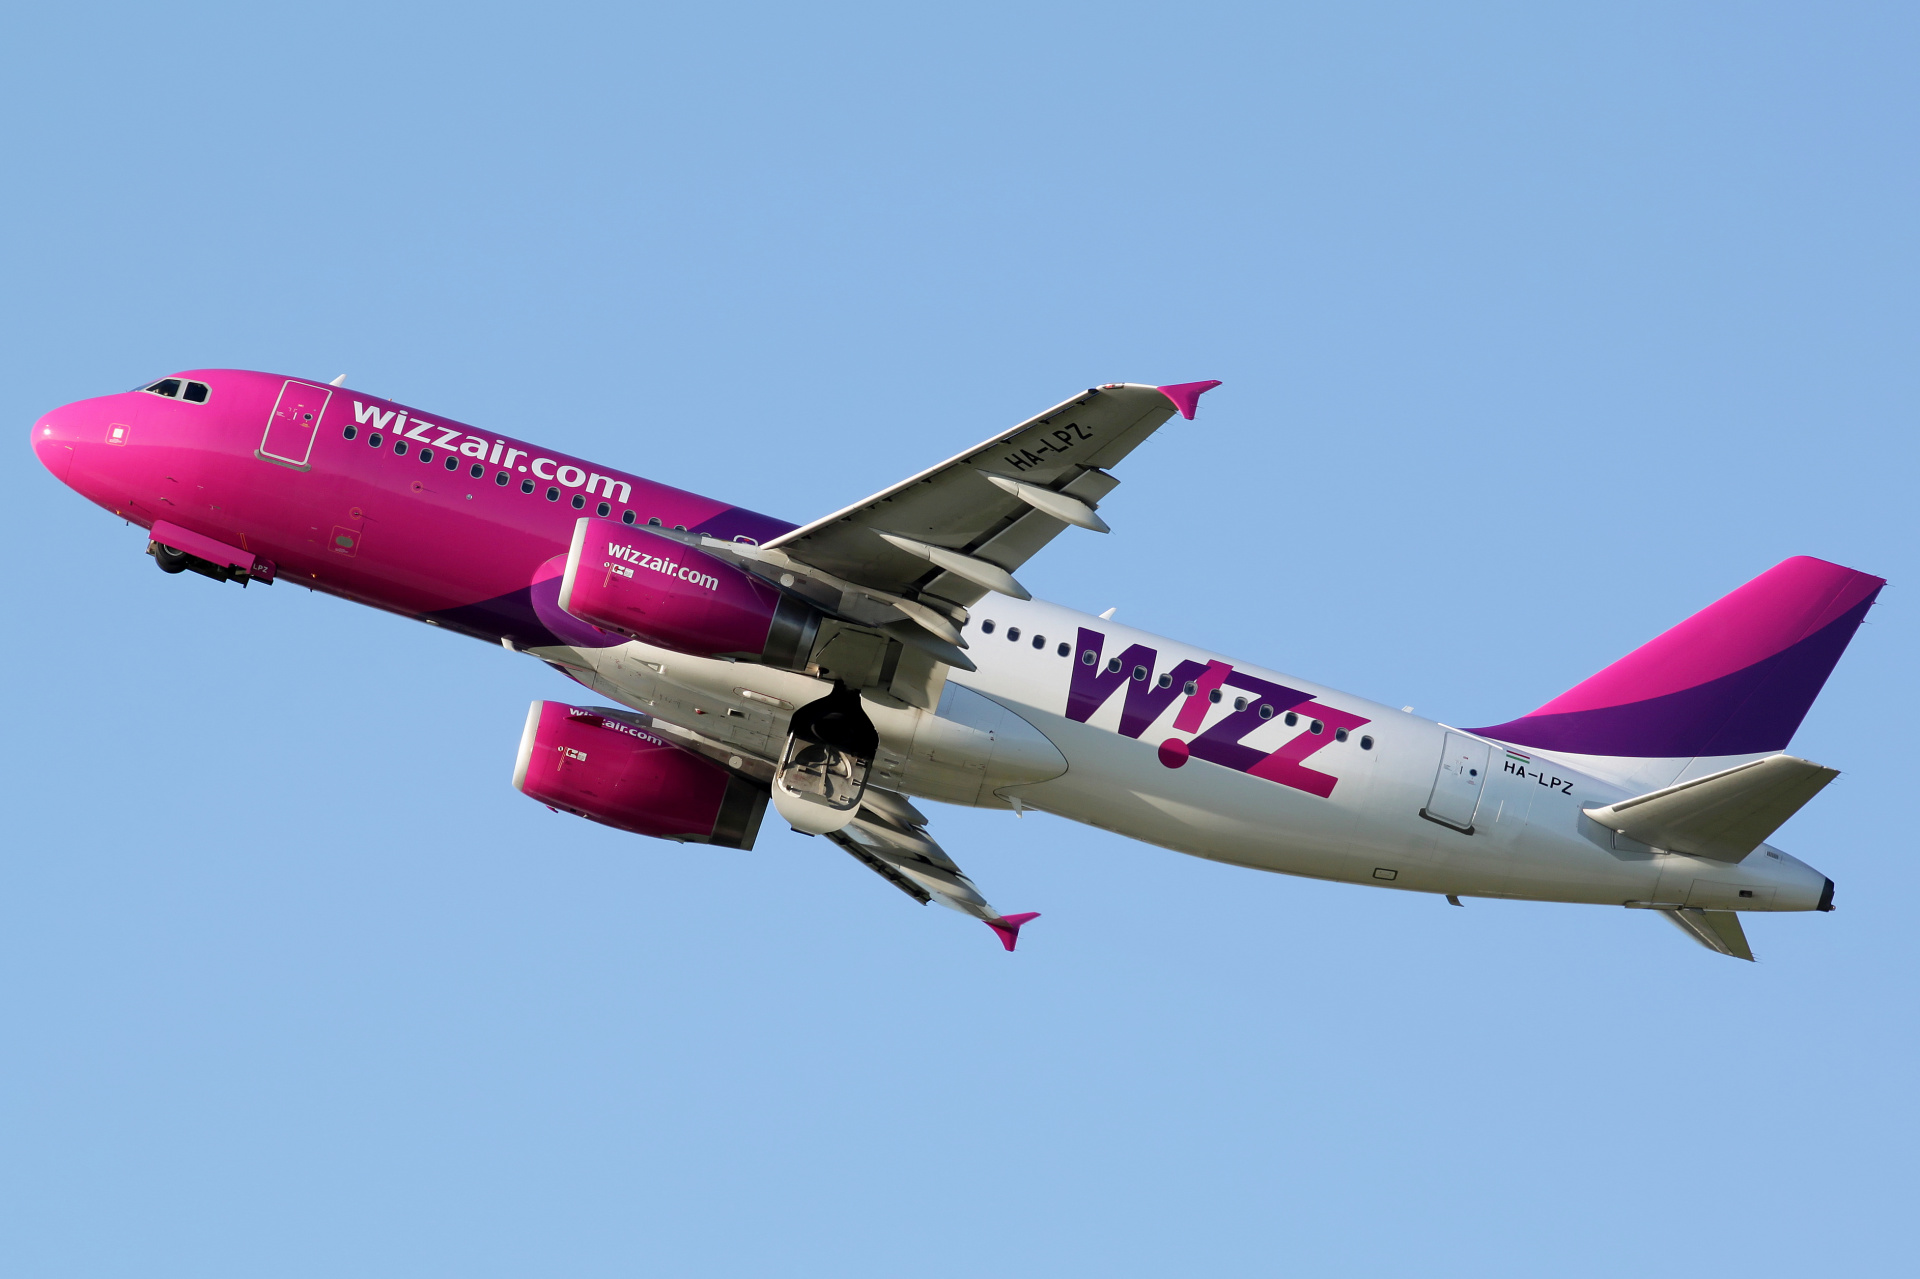 HA-LPZ (Samoloty » Spotting na EPWA » Airbus A320-200 » Wizz Air)